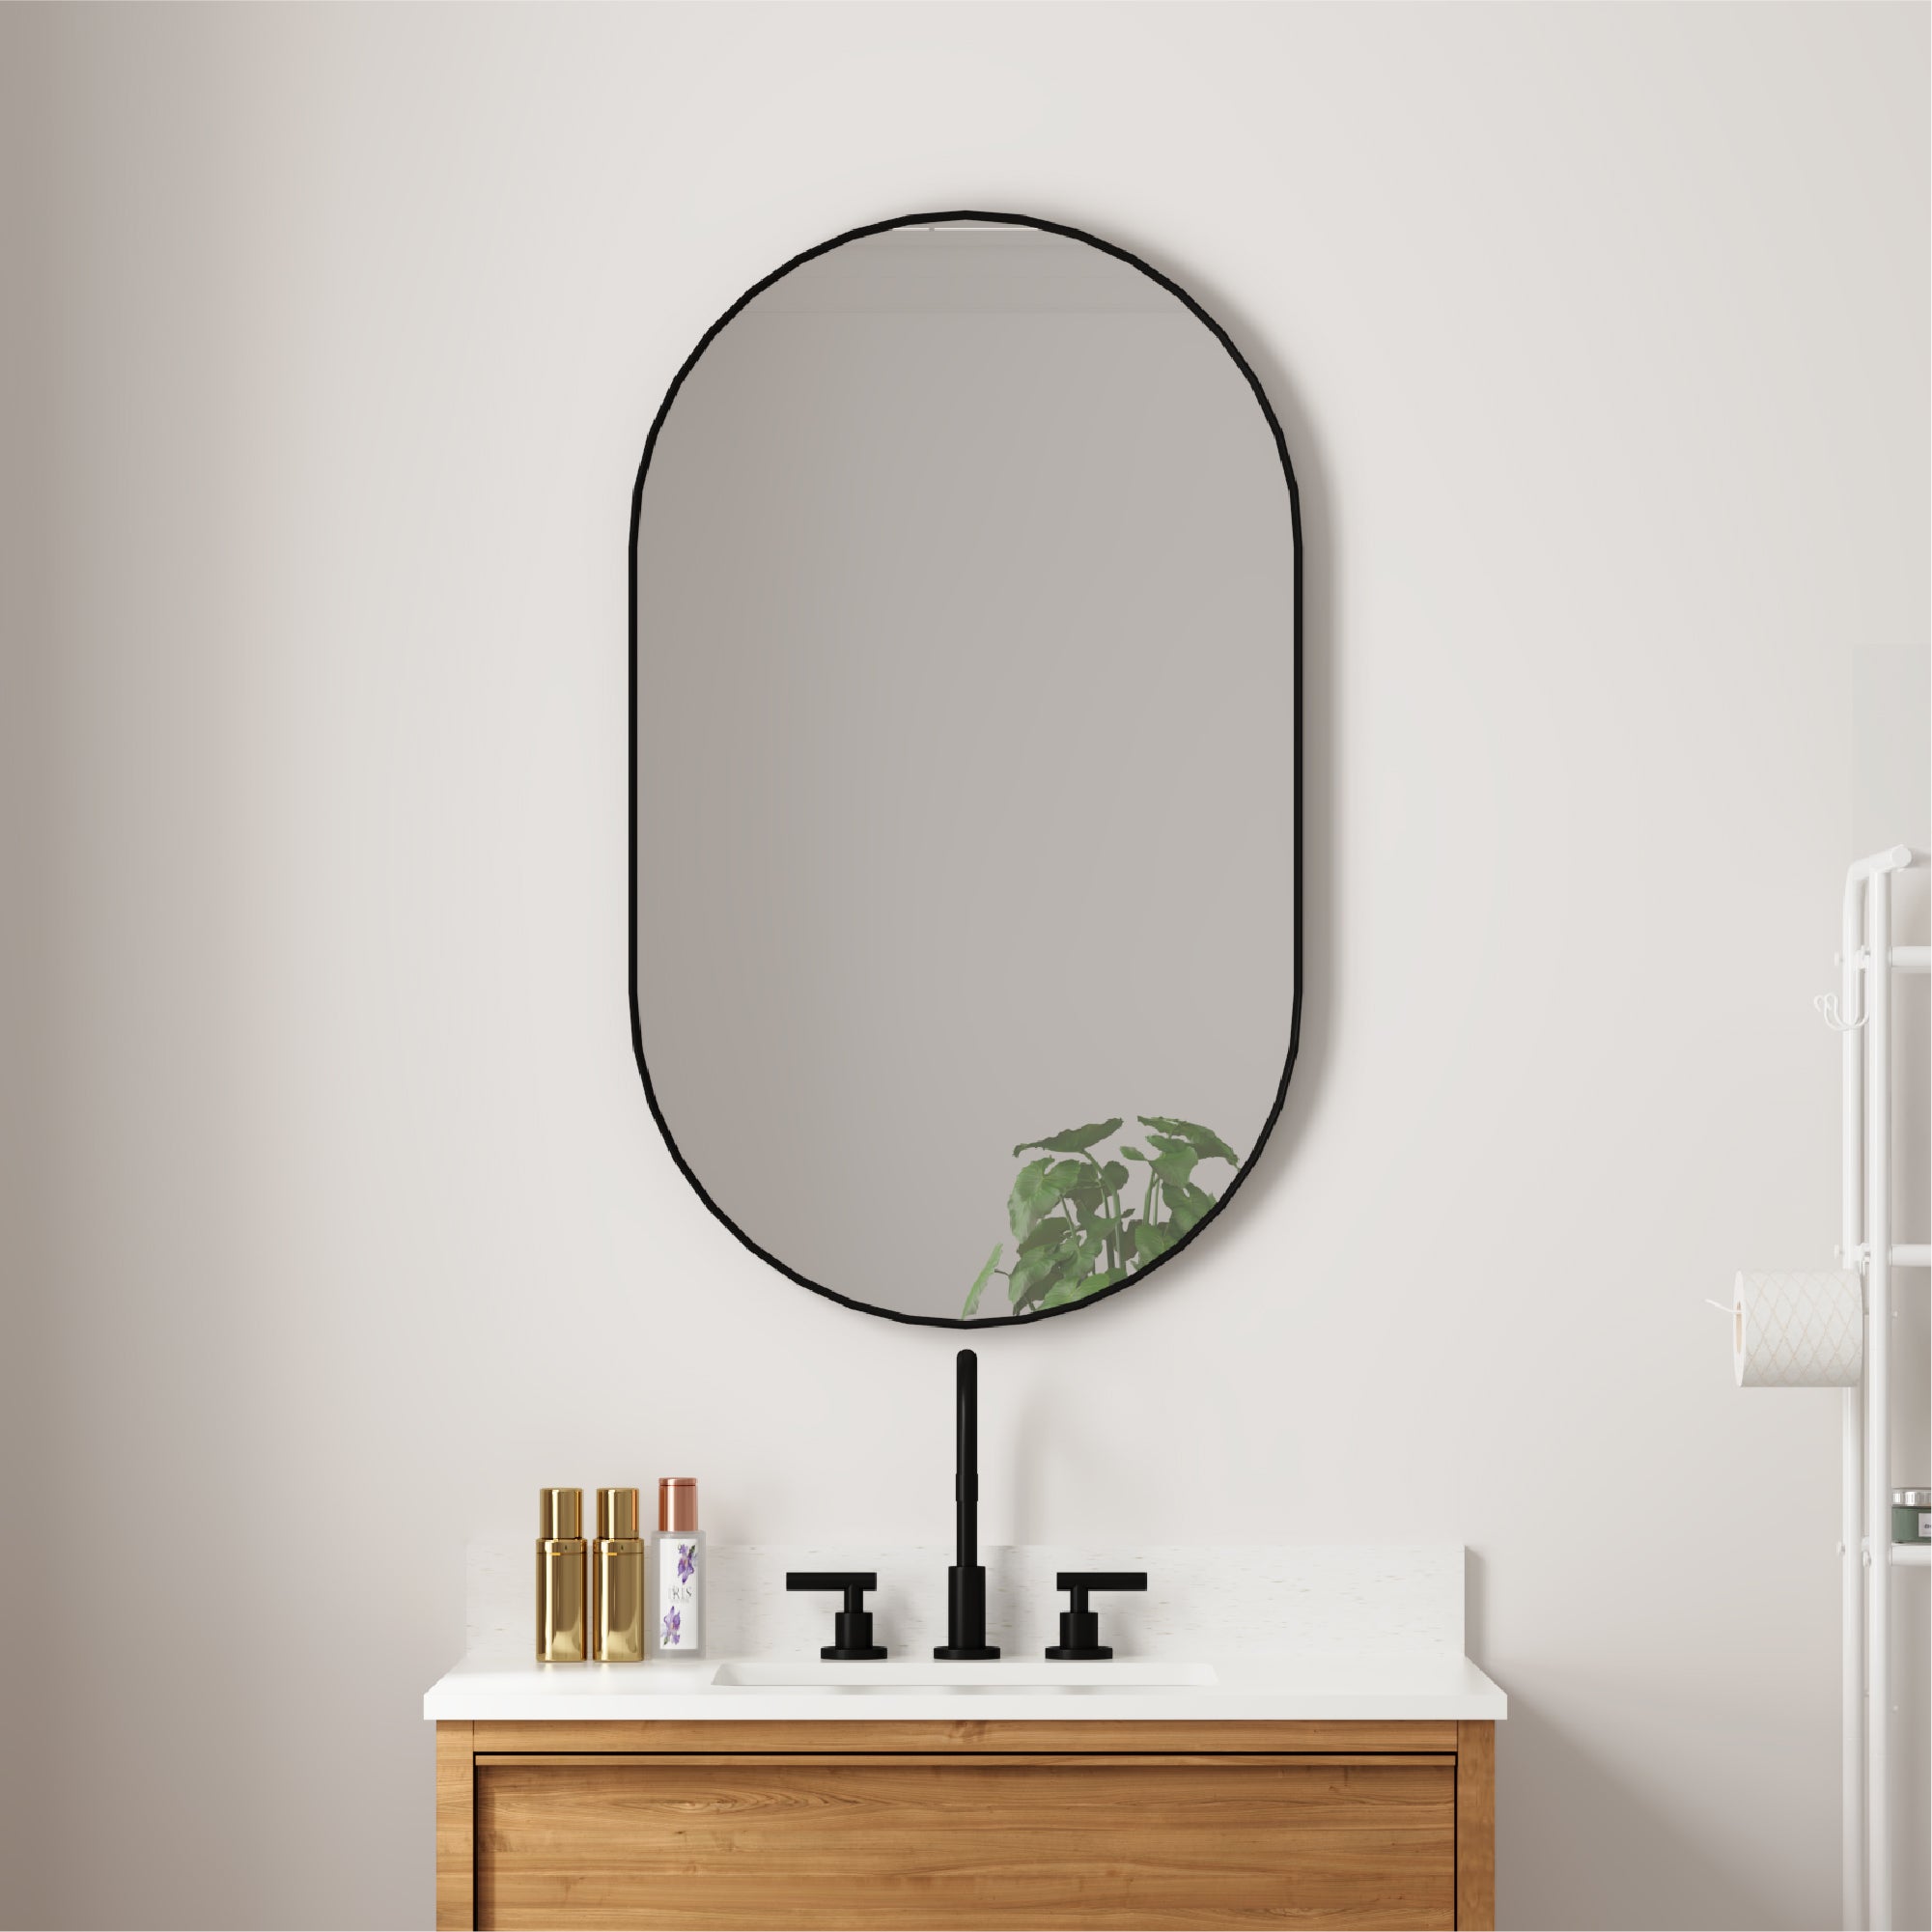 24 in. W x 40 in. H Oval Framed Wall Mount Bathroom Vanity Mirror in Matte Black